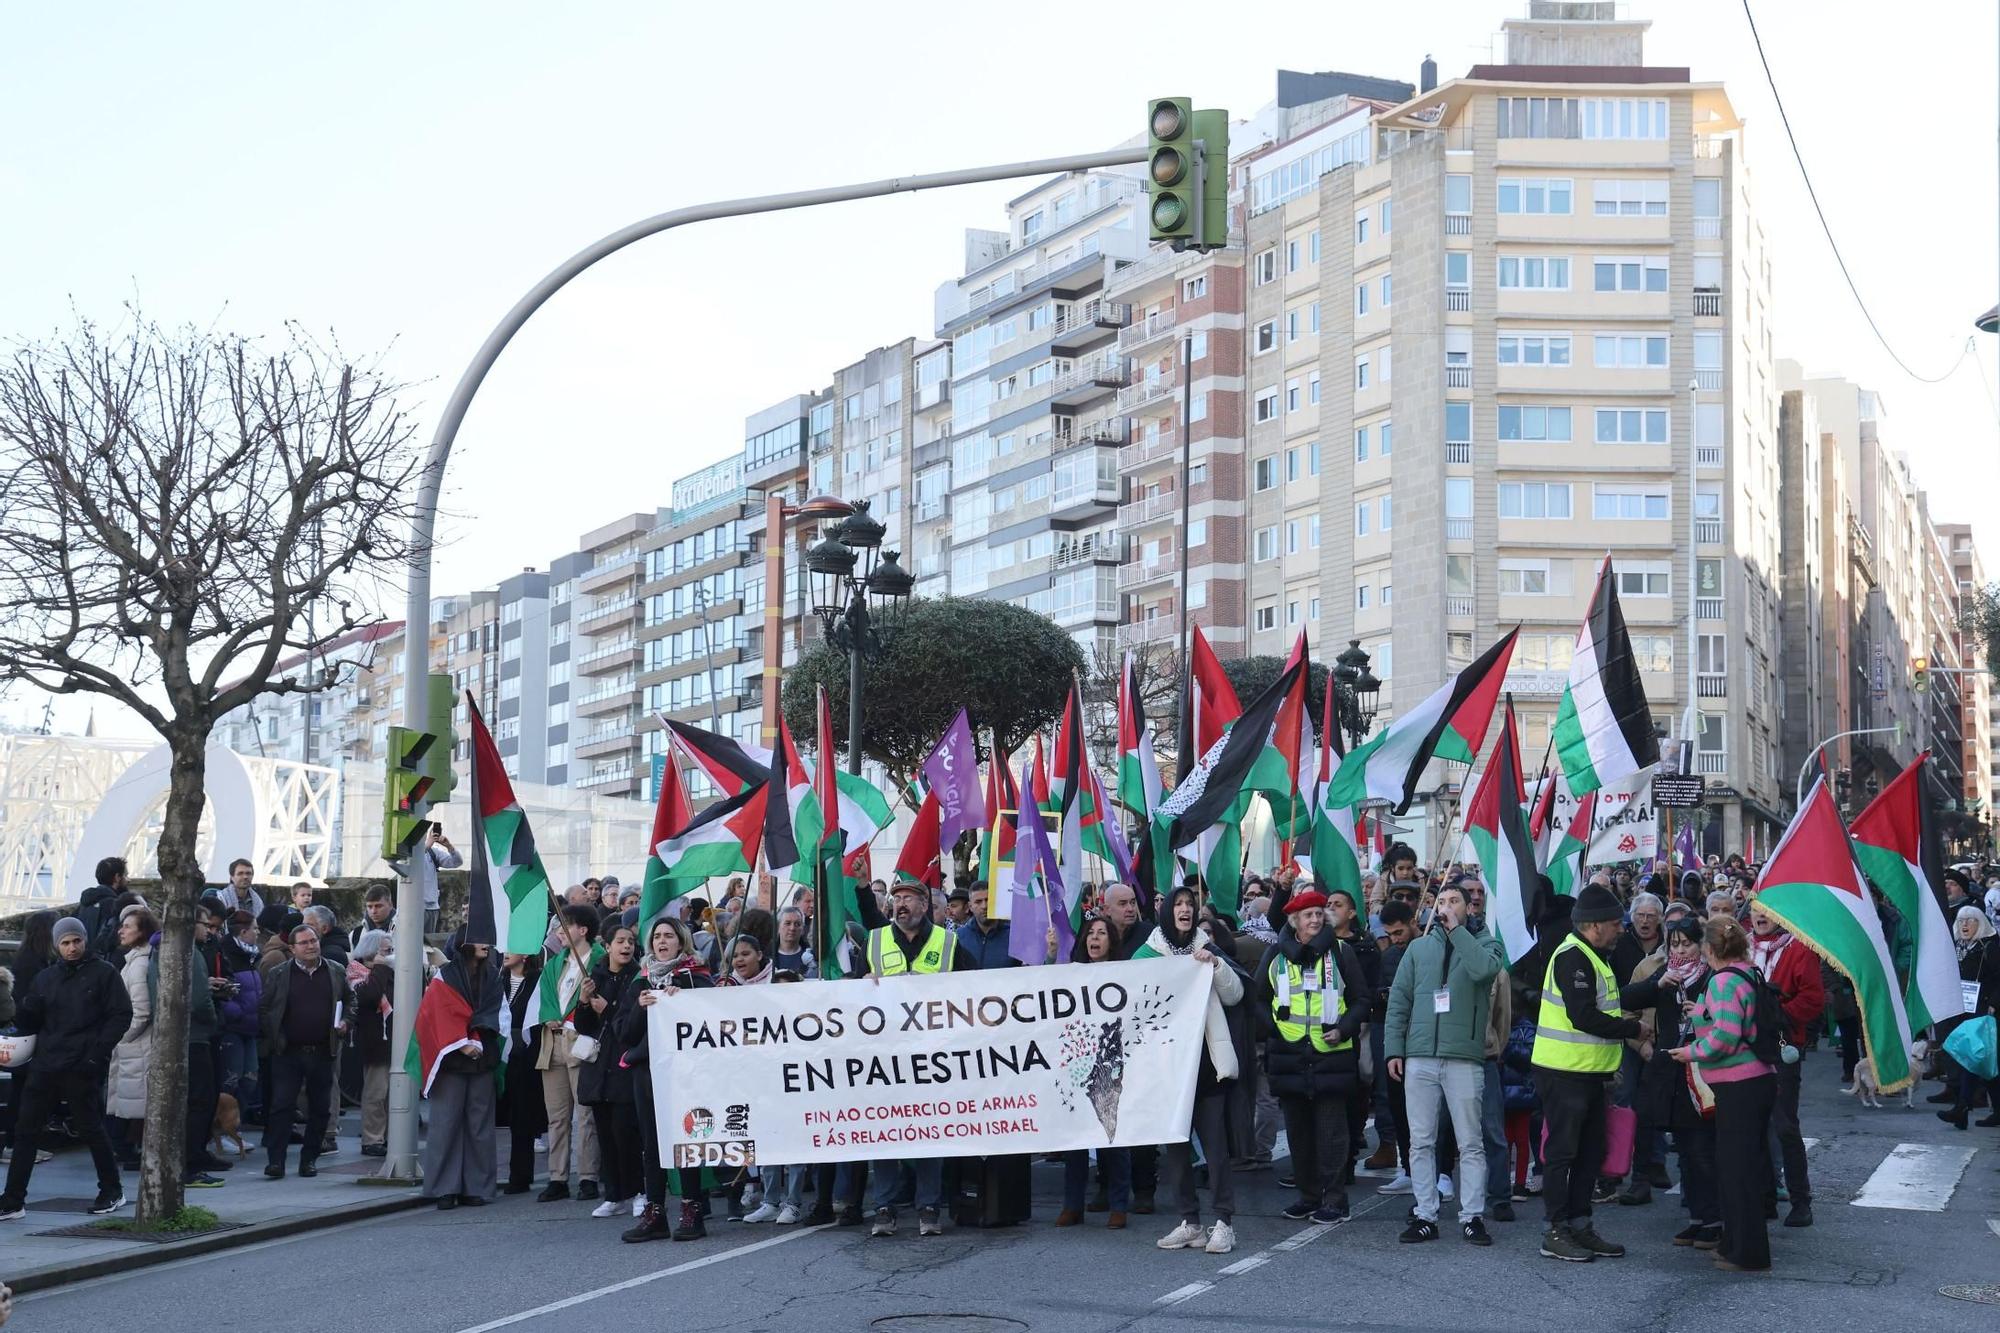 Vigo sale a la calle: "Paremos el genocidio en Palestina"